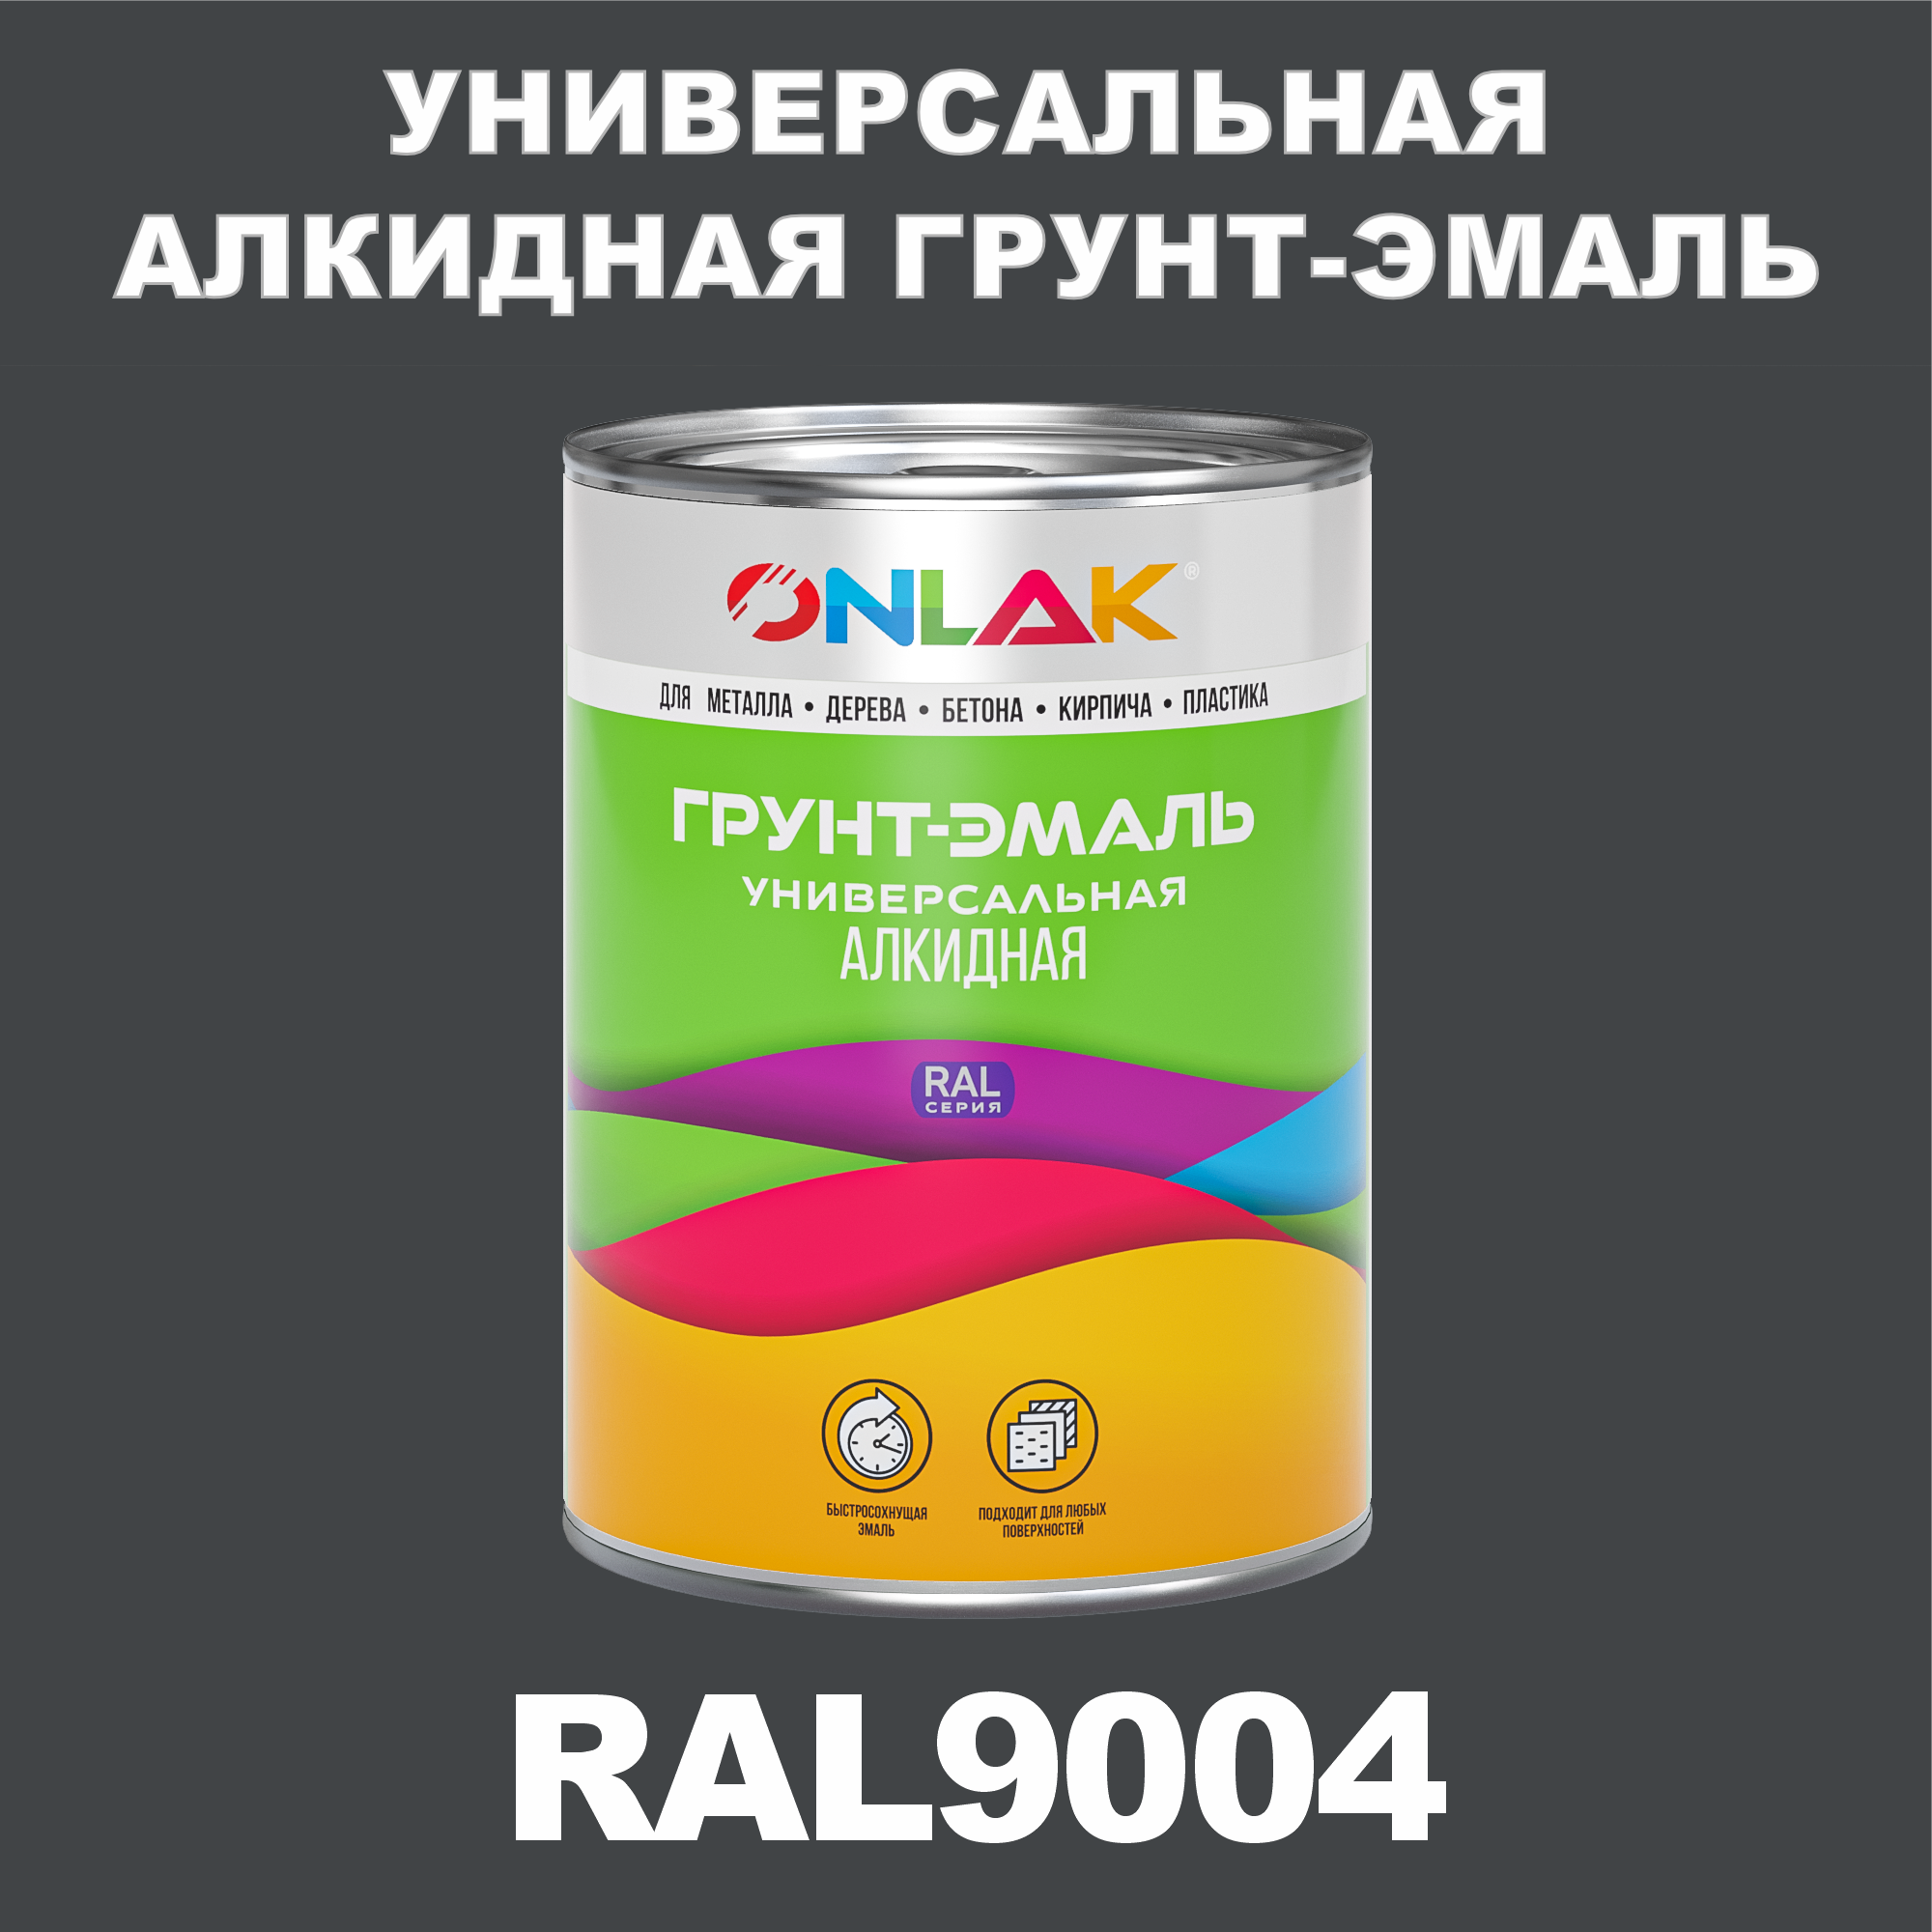 Грунт-эмаль ONLAK 1К RAL9004 антикоррозионная алкидная по металлу по ржавчине 1 кг